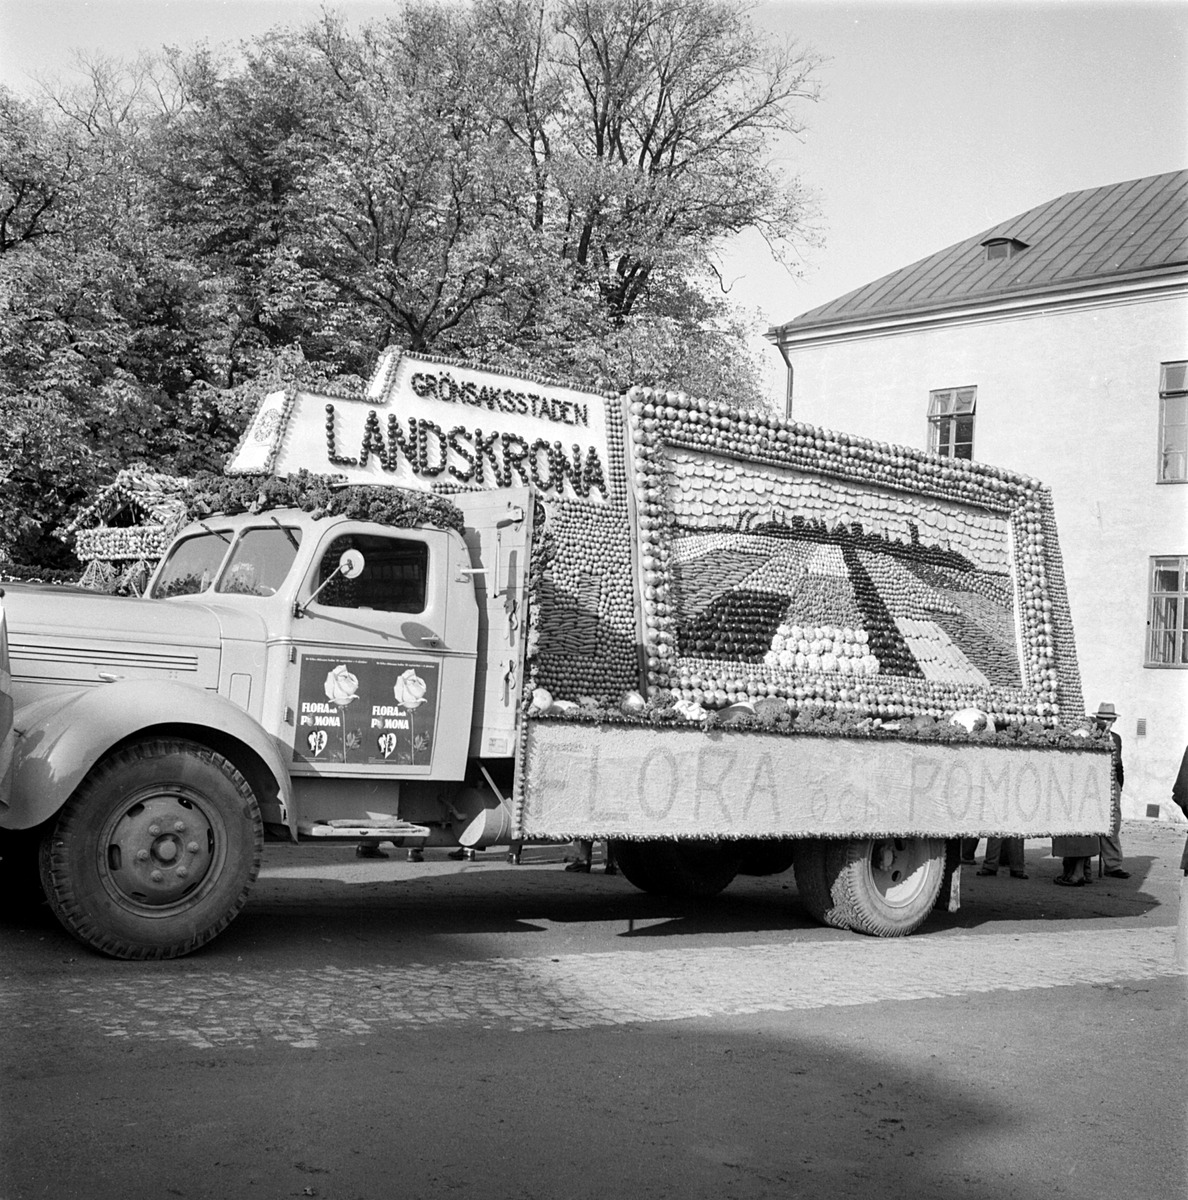 Ett fantastiskt arbete hade lagts ned på detta ekipage som var del i den kortege som besökte Linköping hösten 1953. Fotografens register ger oss få besked om händelsen men uppenbart var Landskrona stad inblandad och möjligtvis fruktgrossisten Pomona.